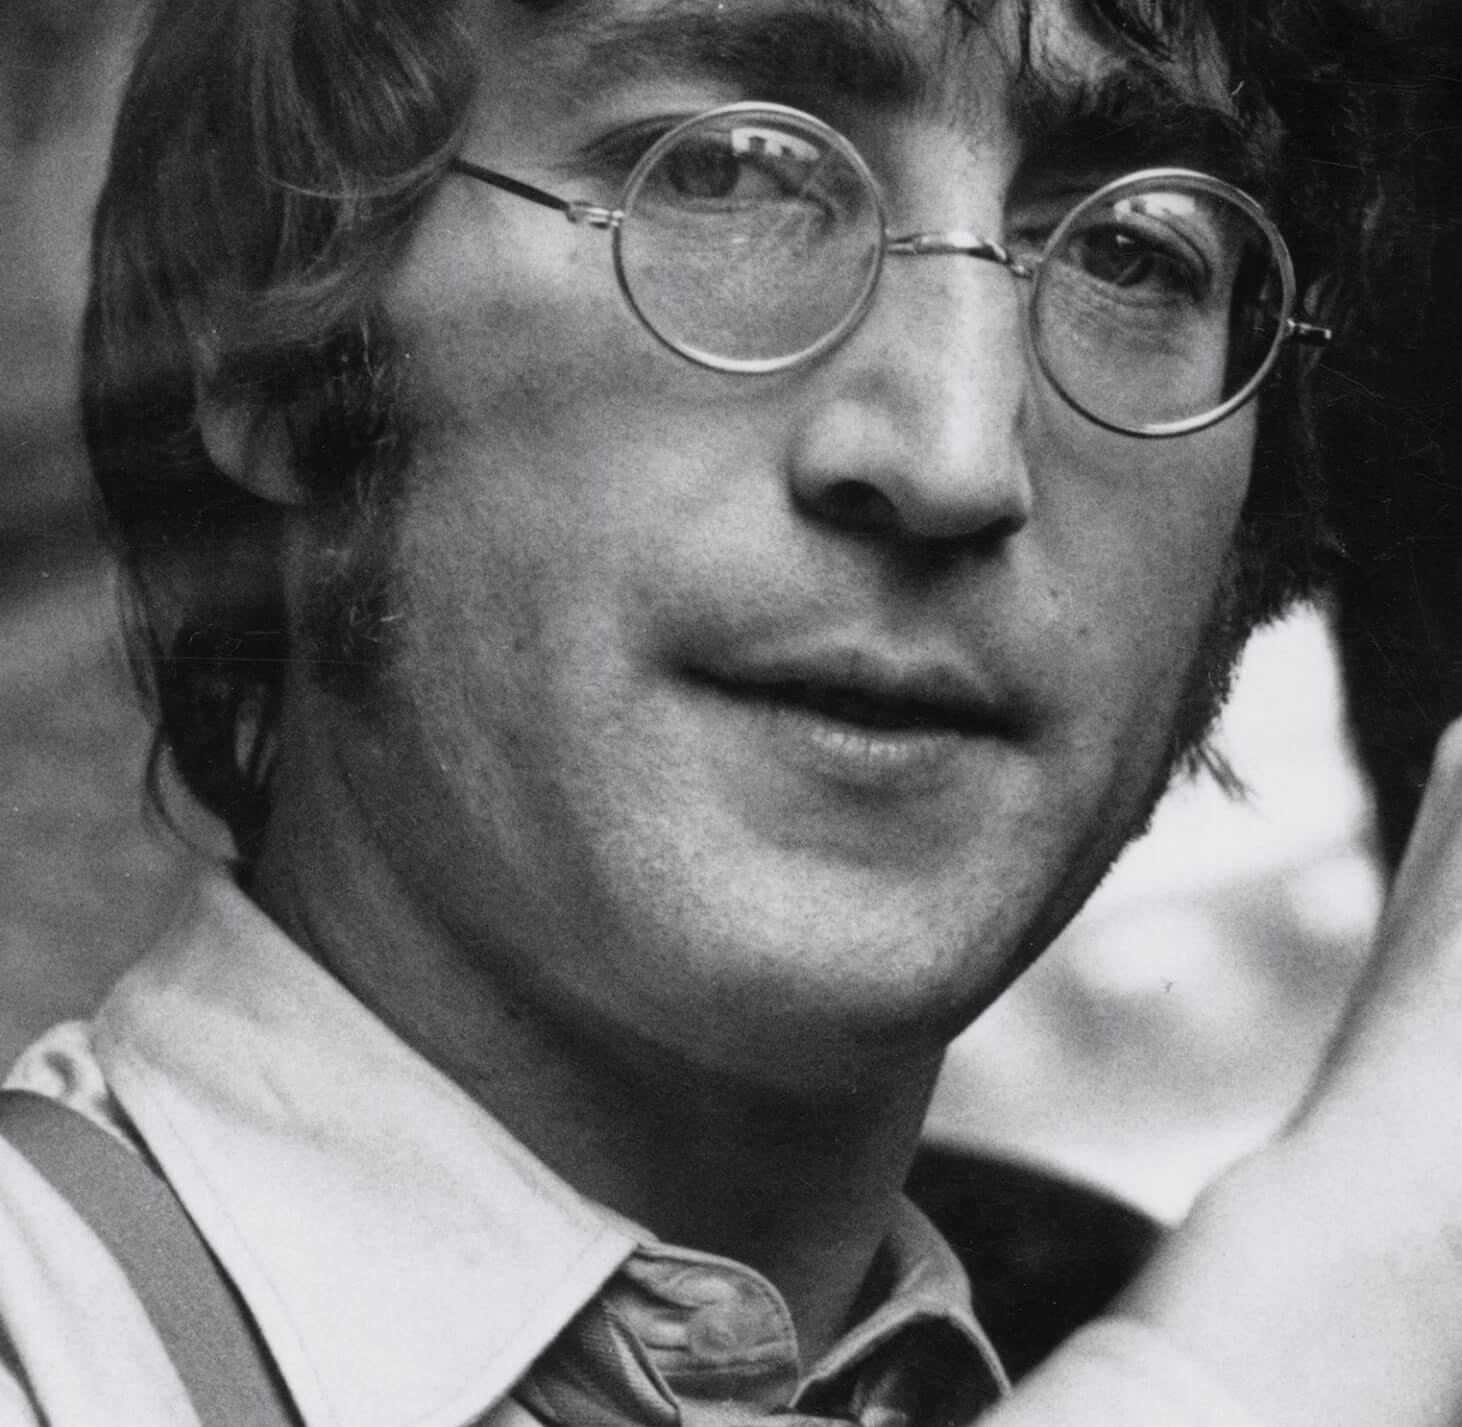 John Lennon in black-and-white